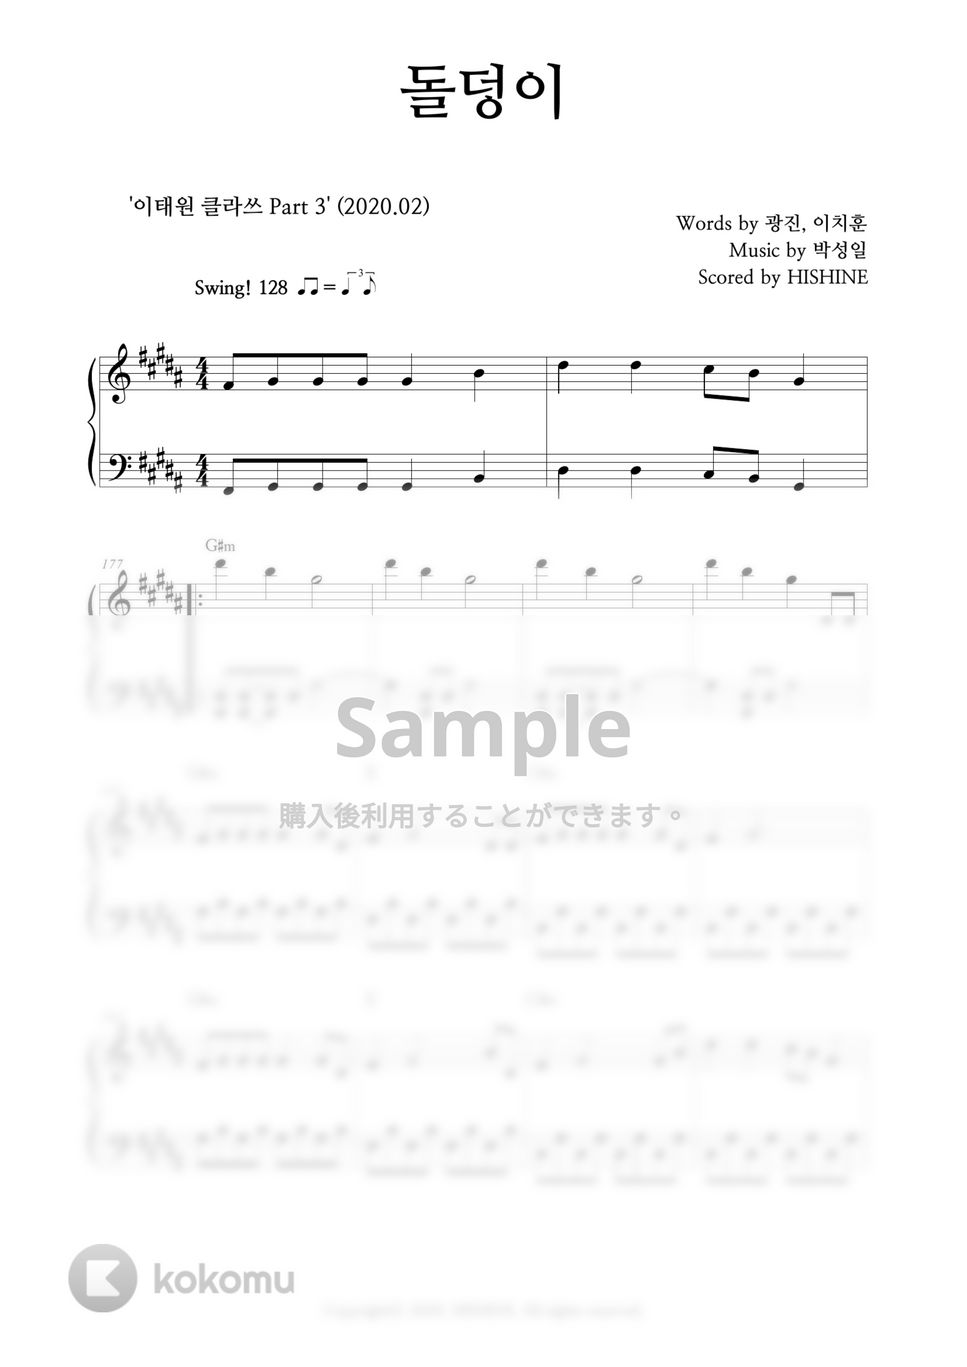 ハ・ヒョヌ - 石ころ(梨泰院クラス OST) by HISHINE